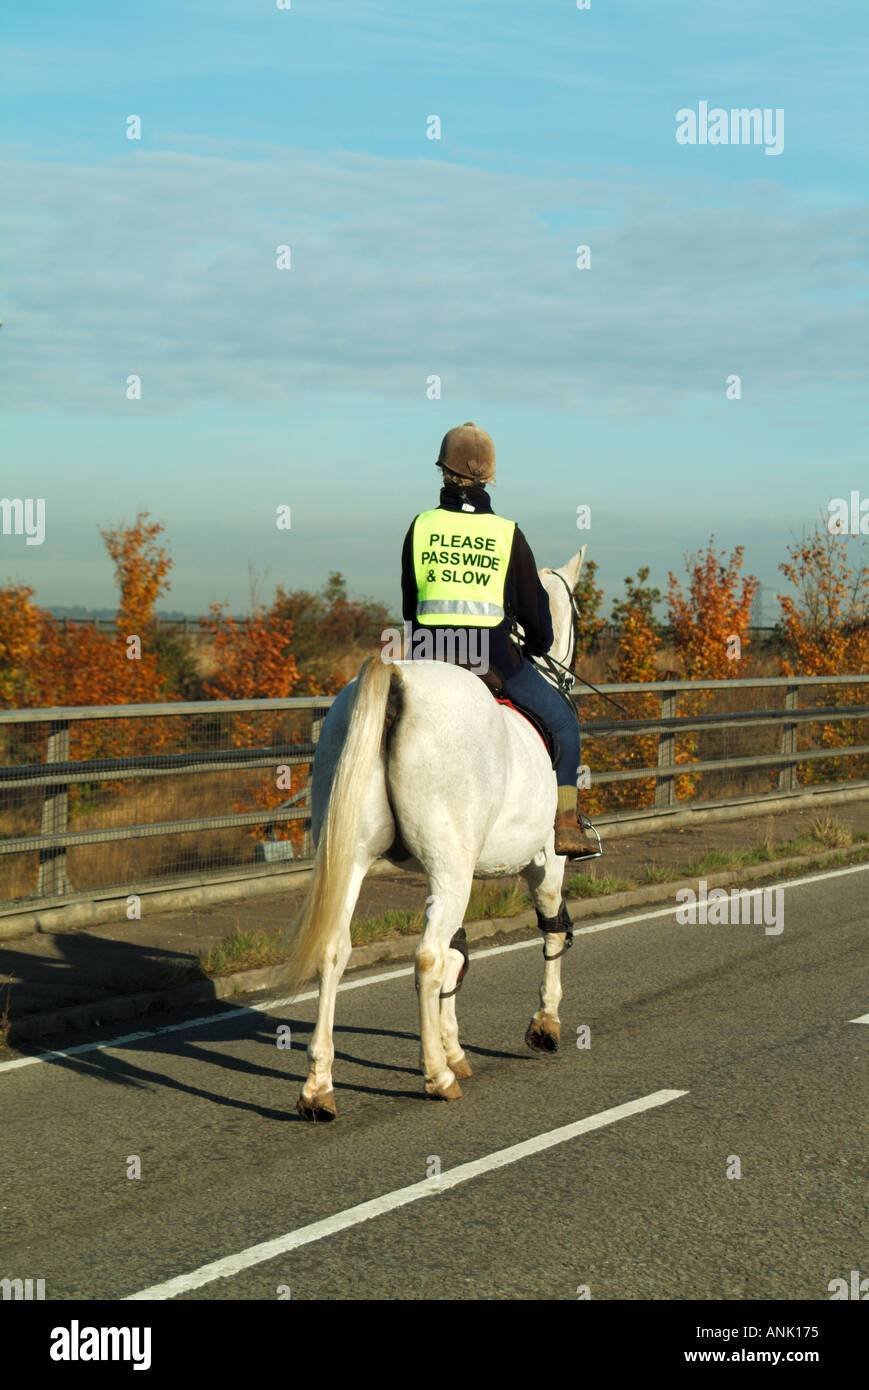 Alta viz vista posteriore della donna cavallo Cavaliere a ponte stradale sull'autostrada indossando alta visibilità vis giubbotto di sicurezza messaggio pass ampia e lento Essex England Regno Unito Foto Stock